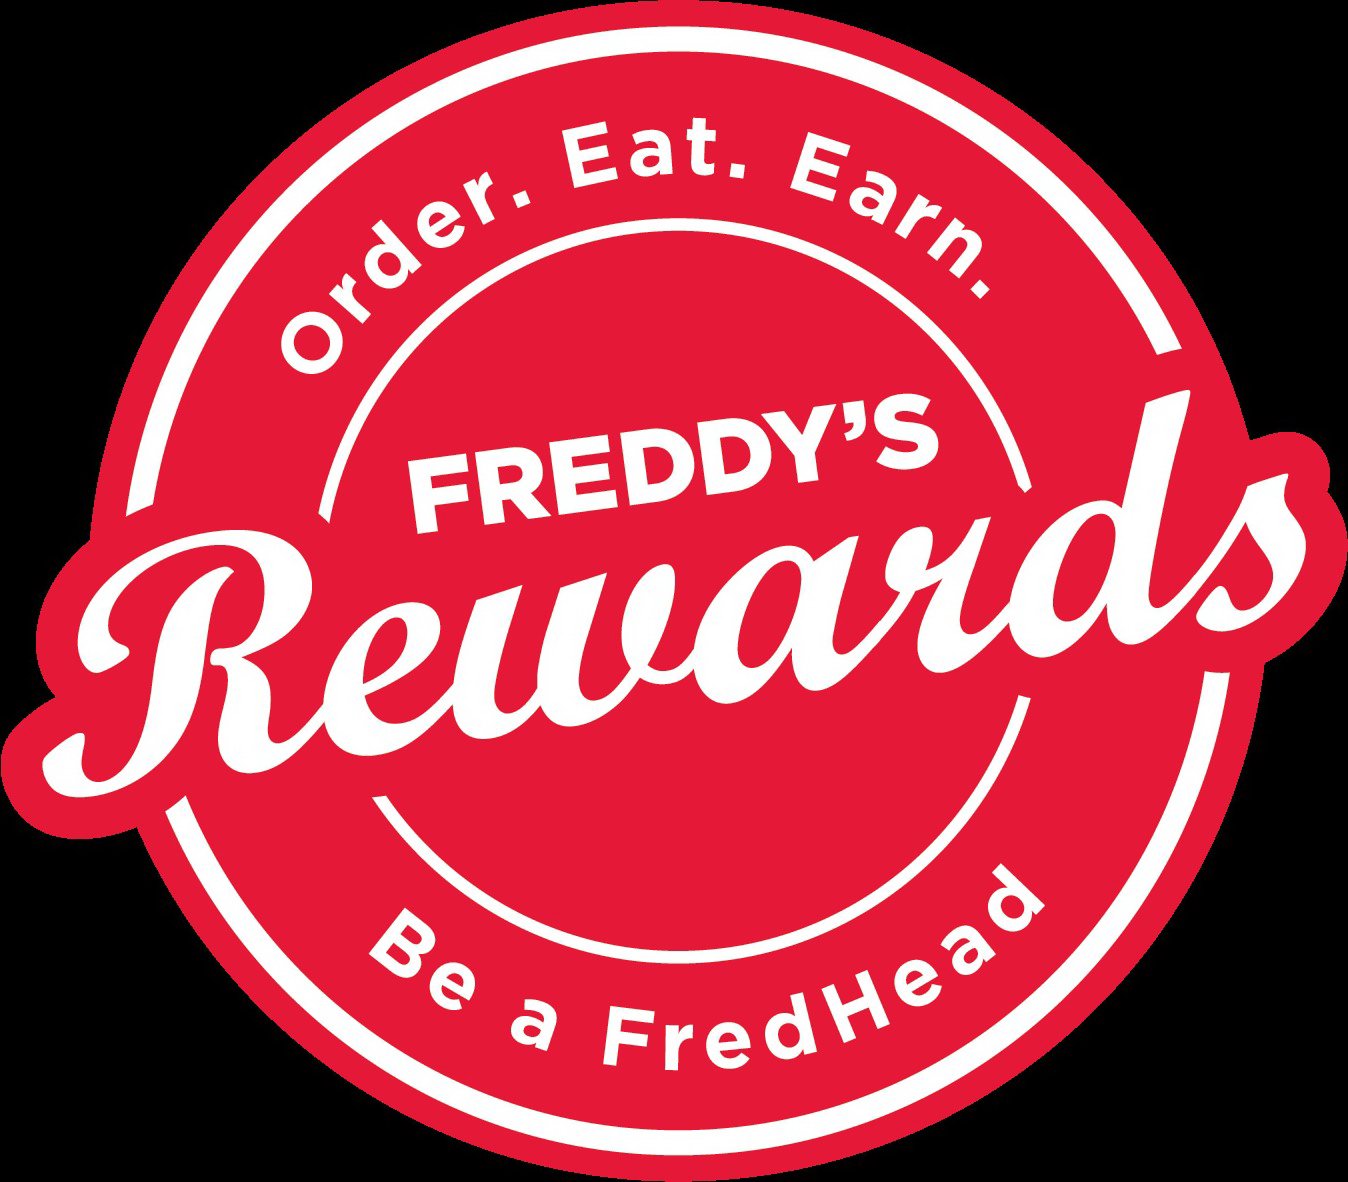  ORDER. EAT. EARN. FREDDY'S REWARDS BE A FREDHEAD